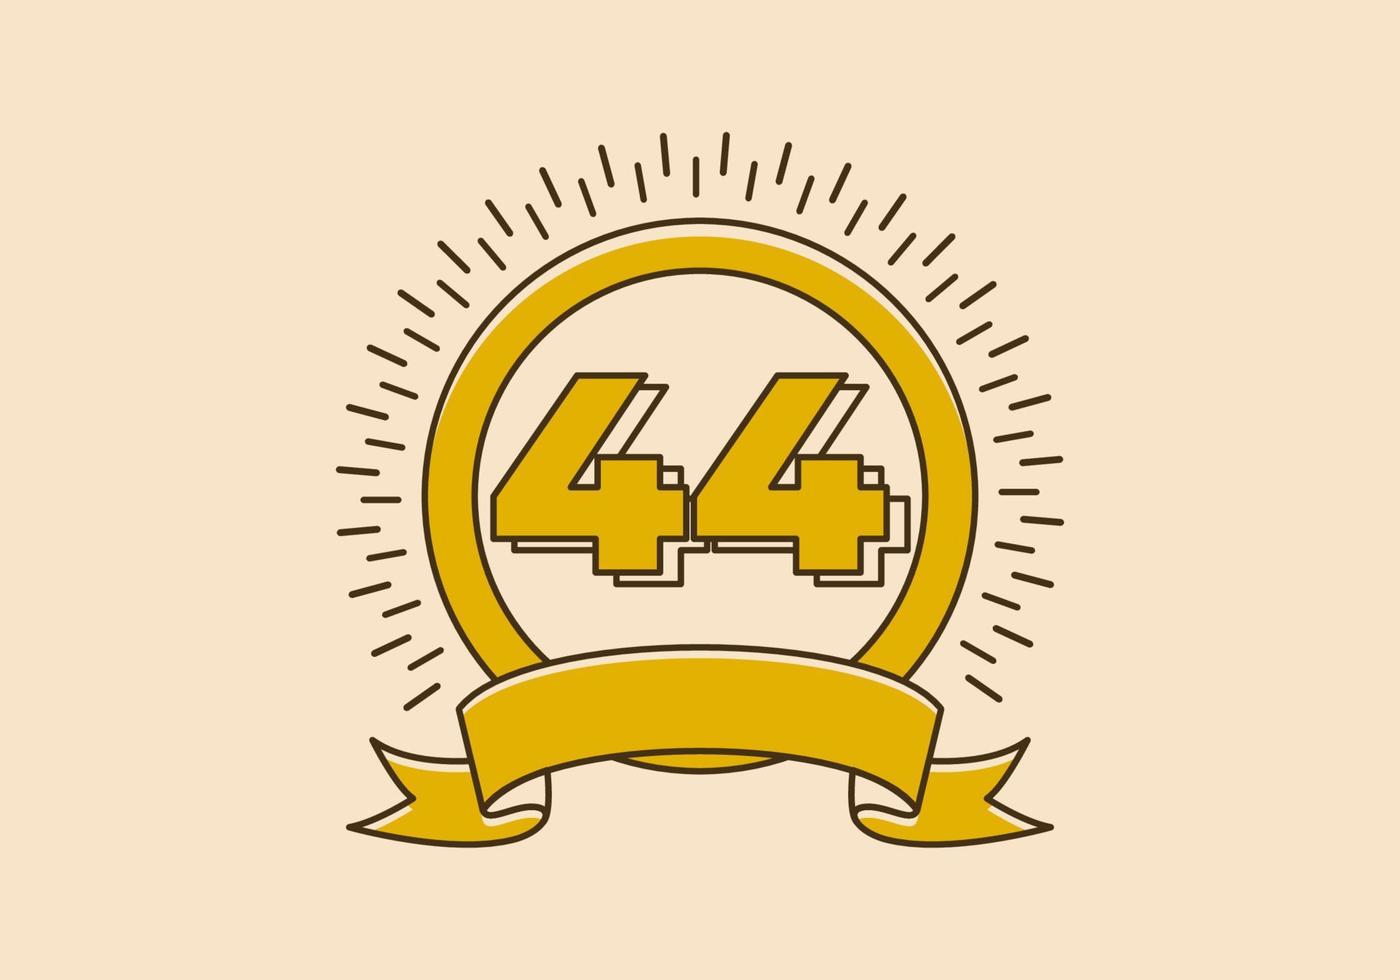 insignia de círculo amarillo vintage con el número 44 en él vector